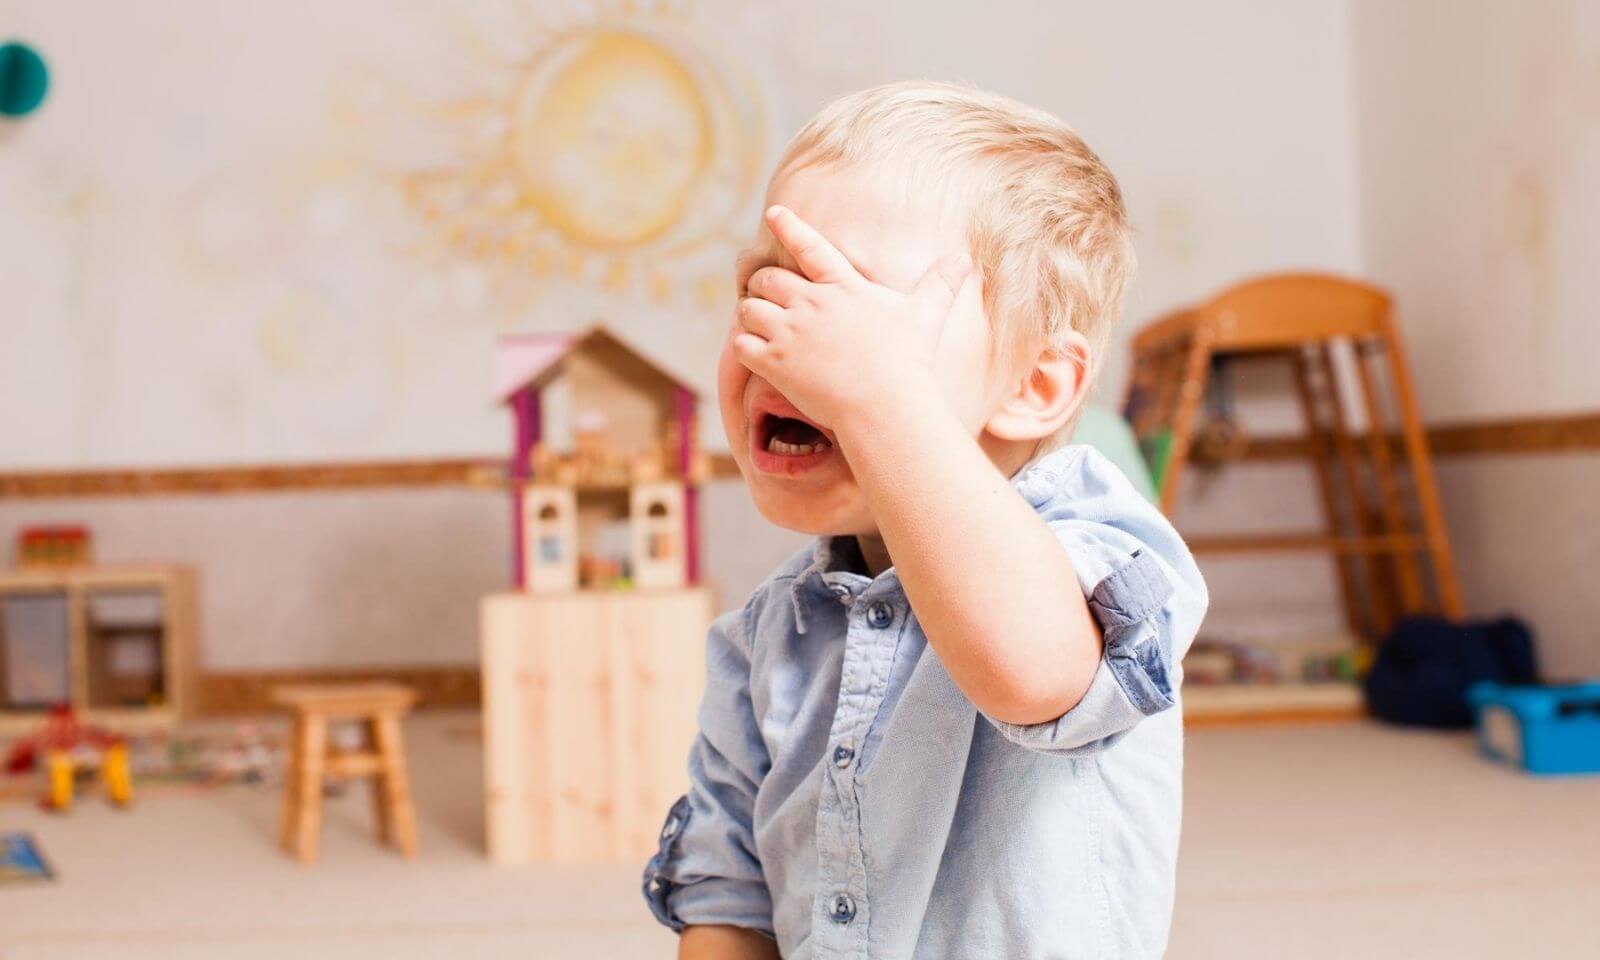 Bunt dwulatka – płaczący 2-latek, w tle pokój dziecięcy pełny zabawek